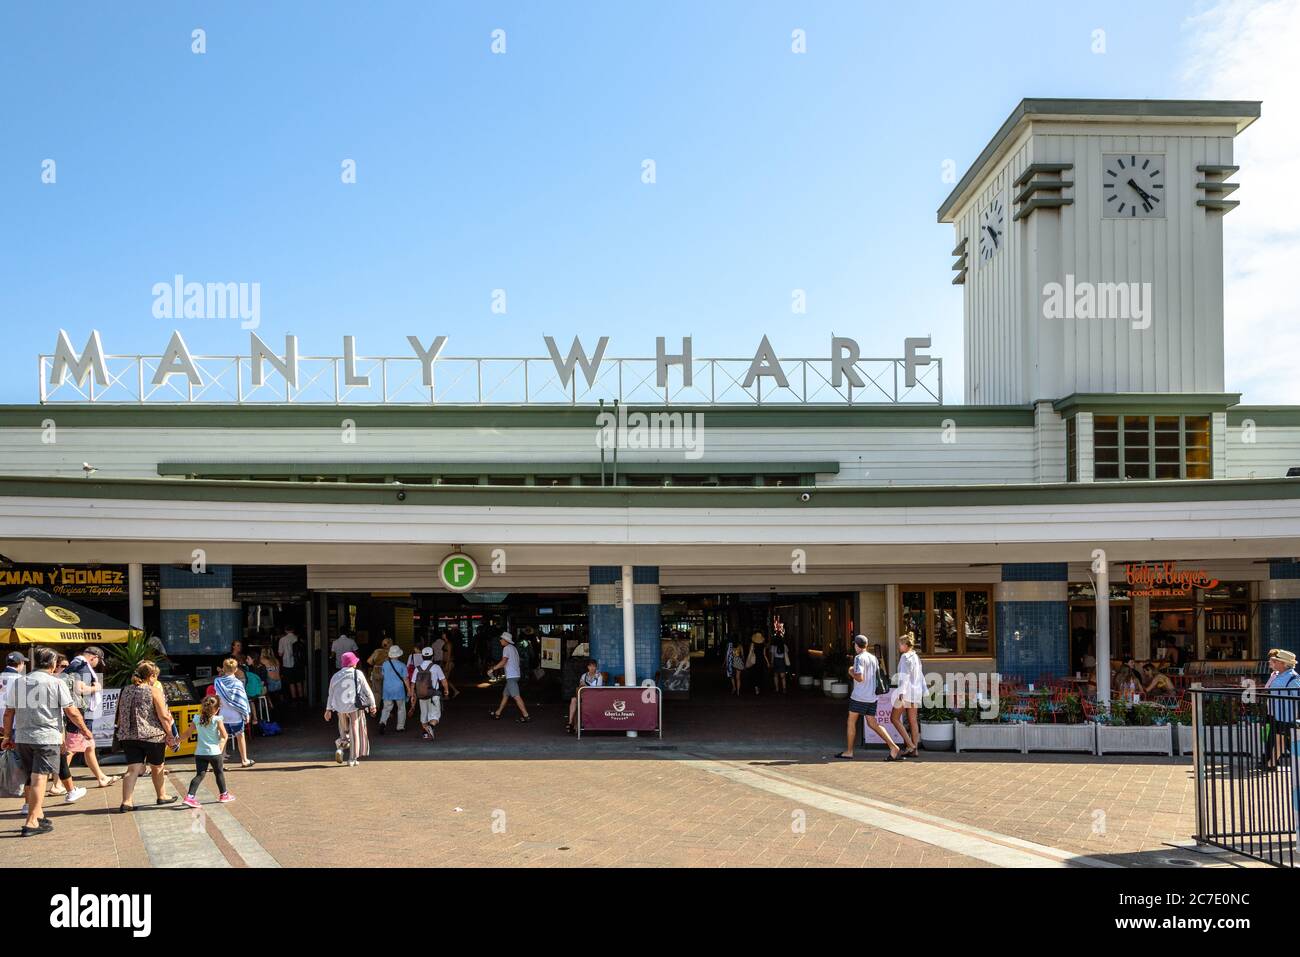 Le terminal de ferry de Manly Wharf est situé par une belle journée d'été Banque D'Images